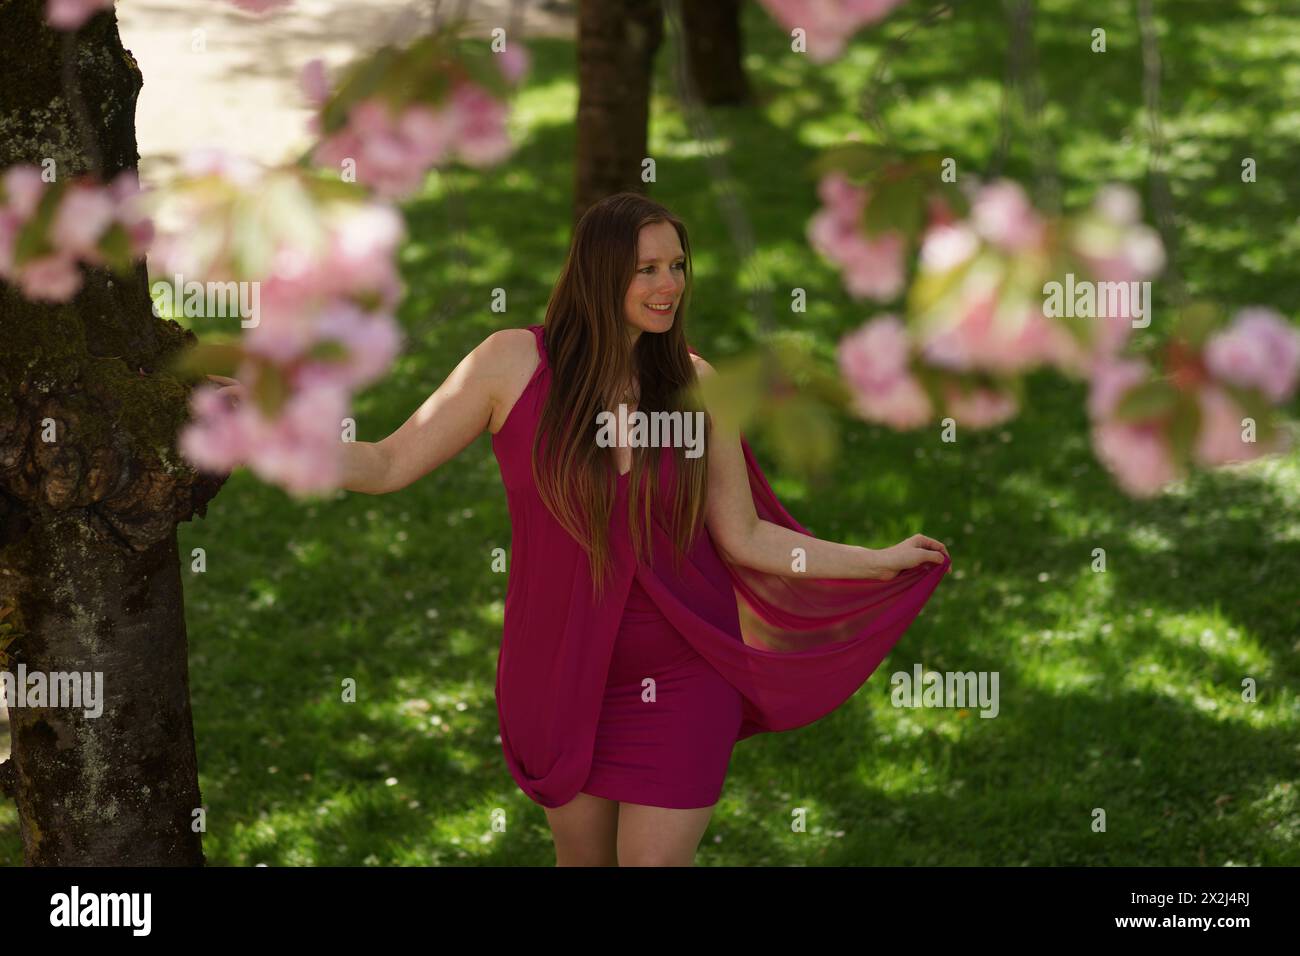 Ein Porträt einer Europäerin in einem burgunderroten Kleid, die natürlich und warm in die Kamera lächelt. Sie wird von Kirschblüten flankiert, die im Nebel verschwimmen Stockfoto